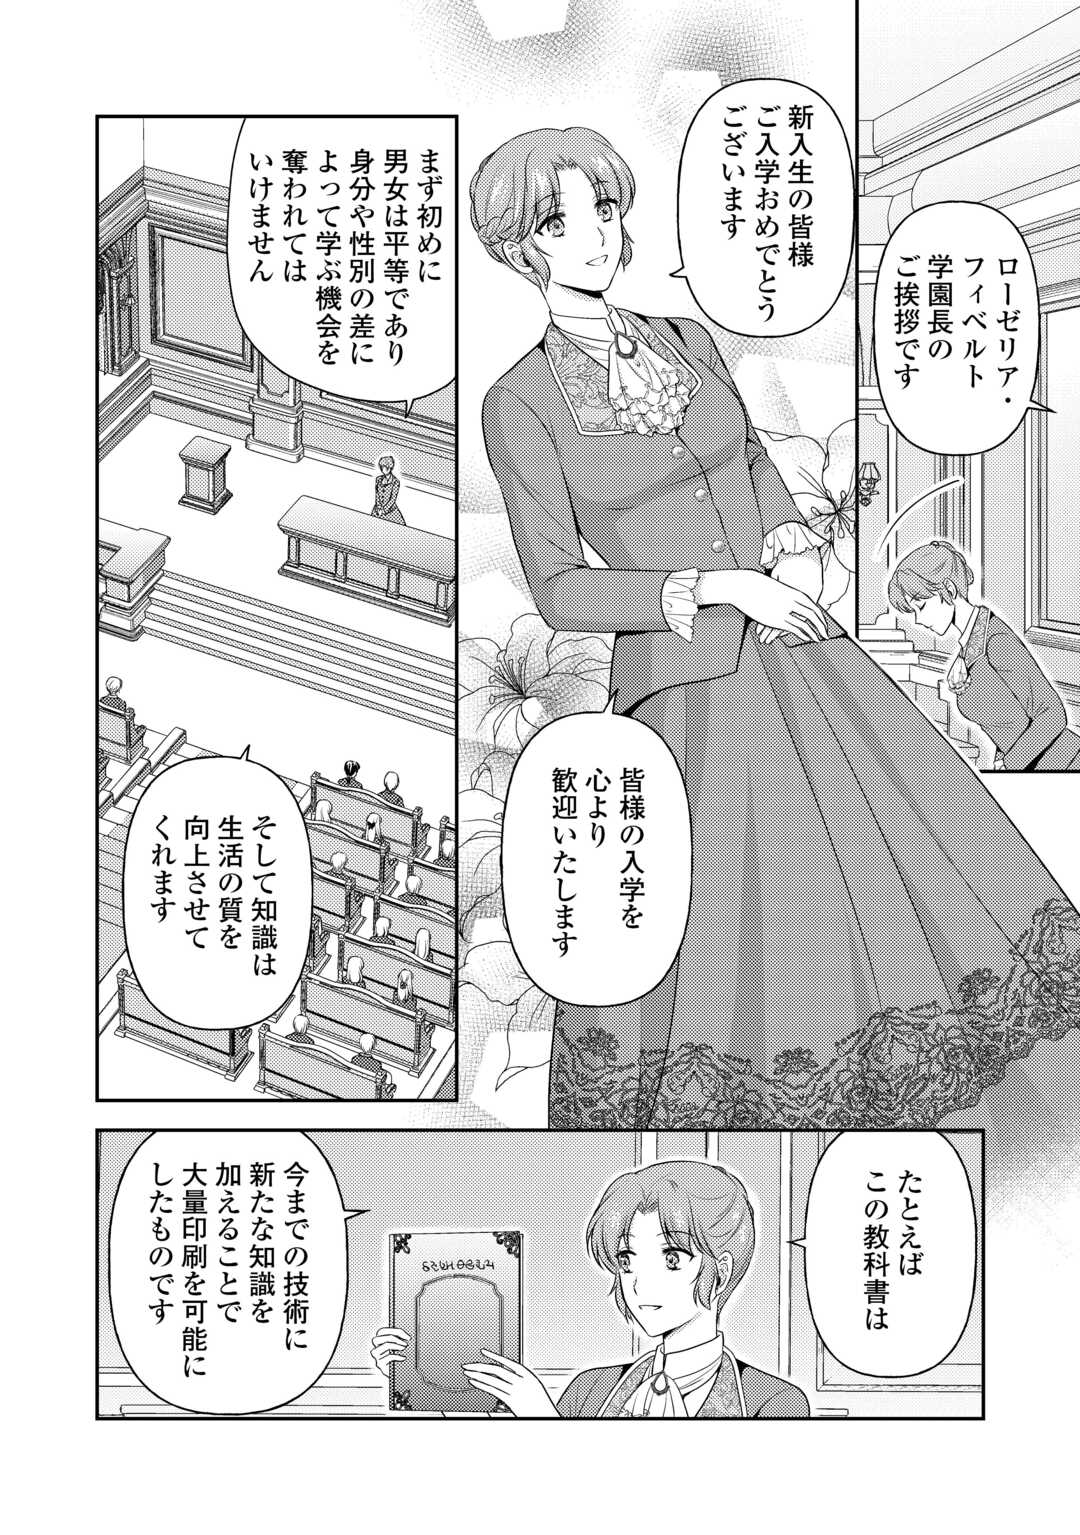 Kawaii Gimai ga Konyakuhaki Saretarashii no de, Ima kara Orei ni Mairimasu. - Chapter 13 - Page 16